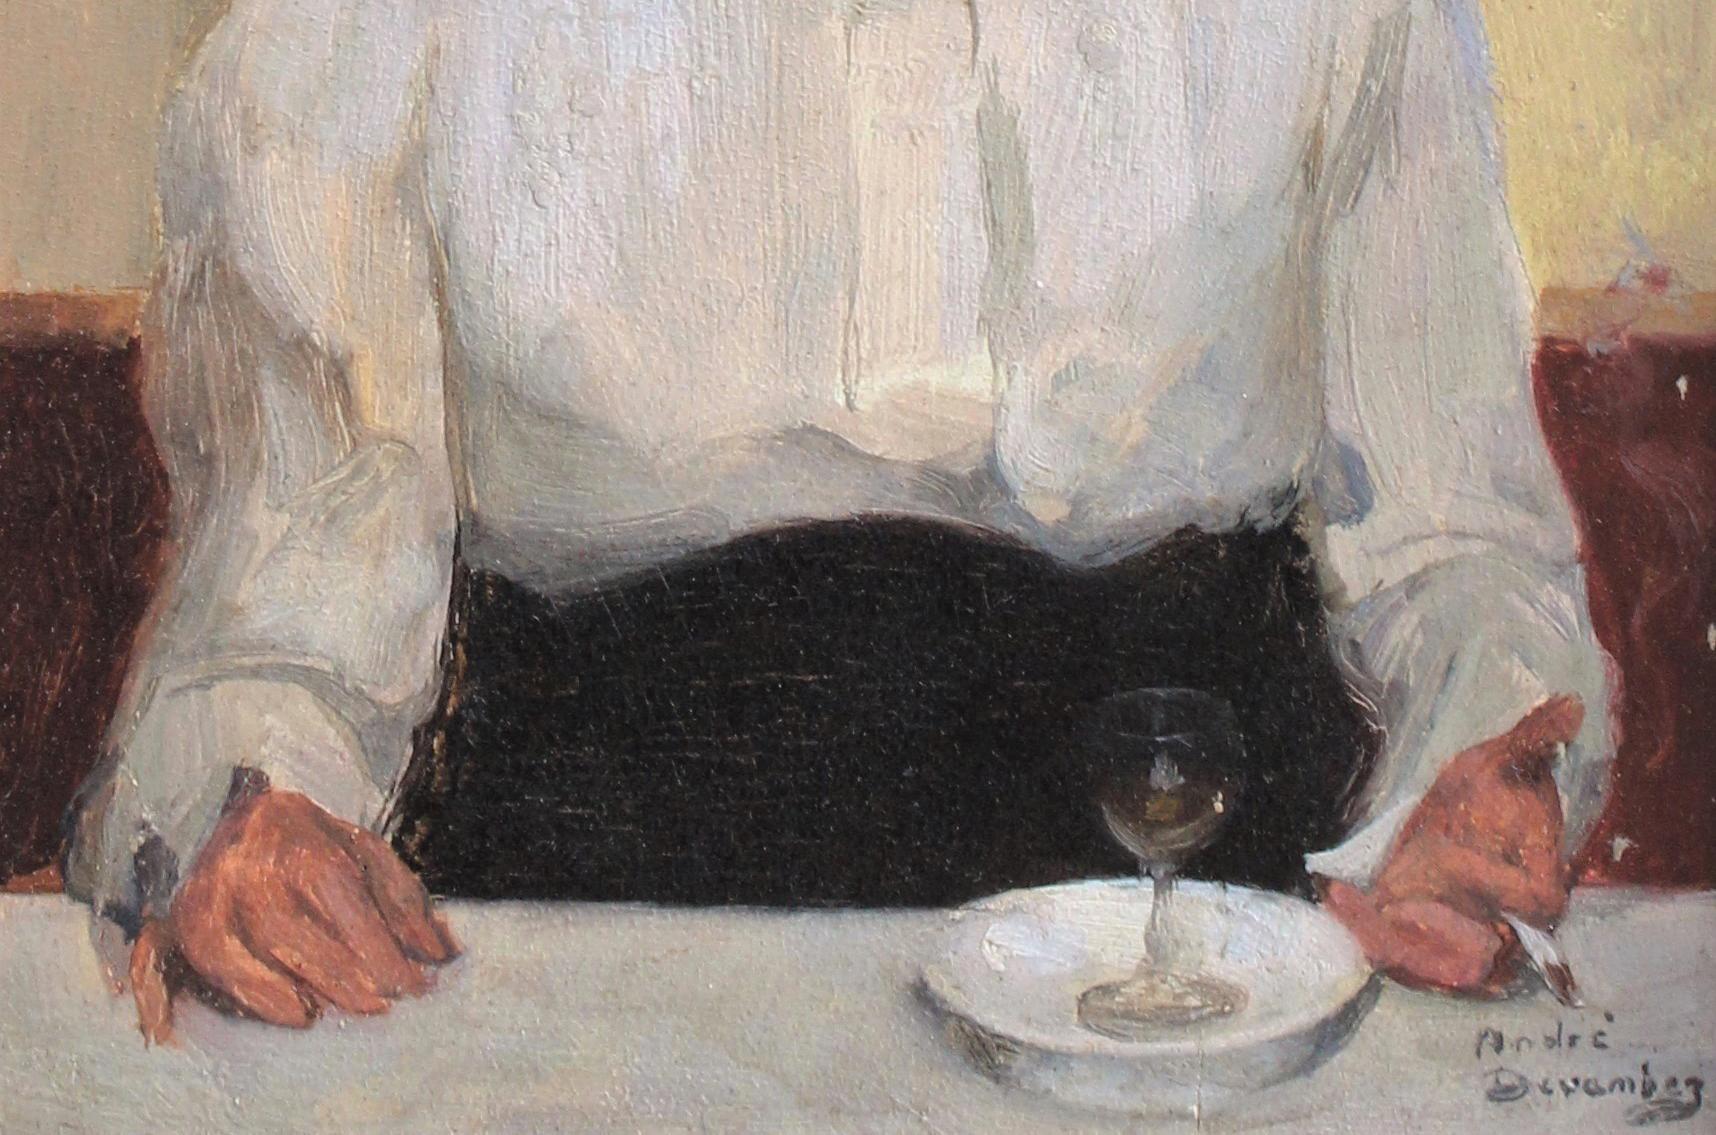 Portrait d'une femme au bistro avec un verre à absinthe et une cigarette - Painting de André Devambez